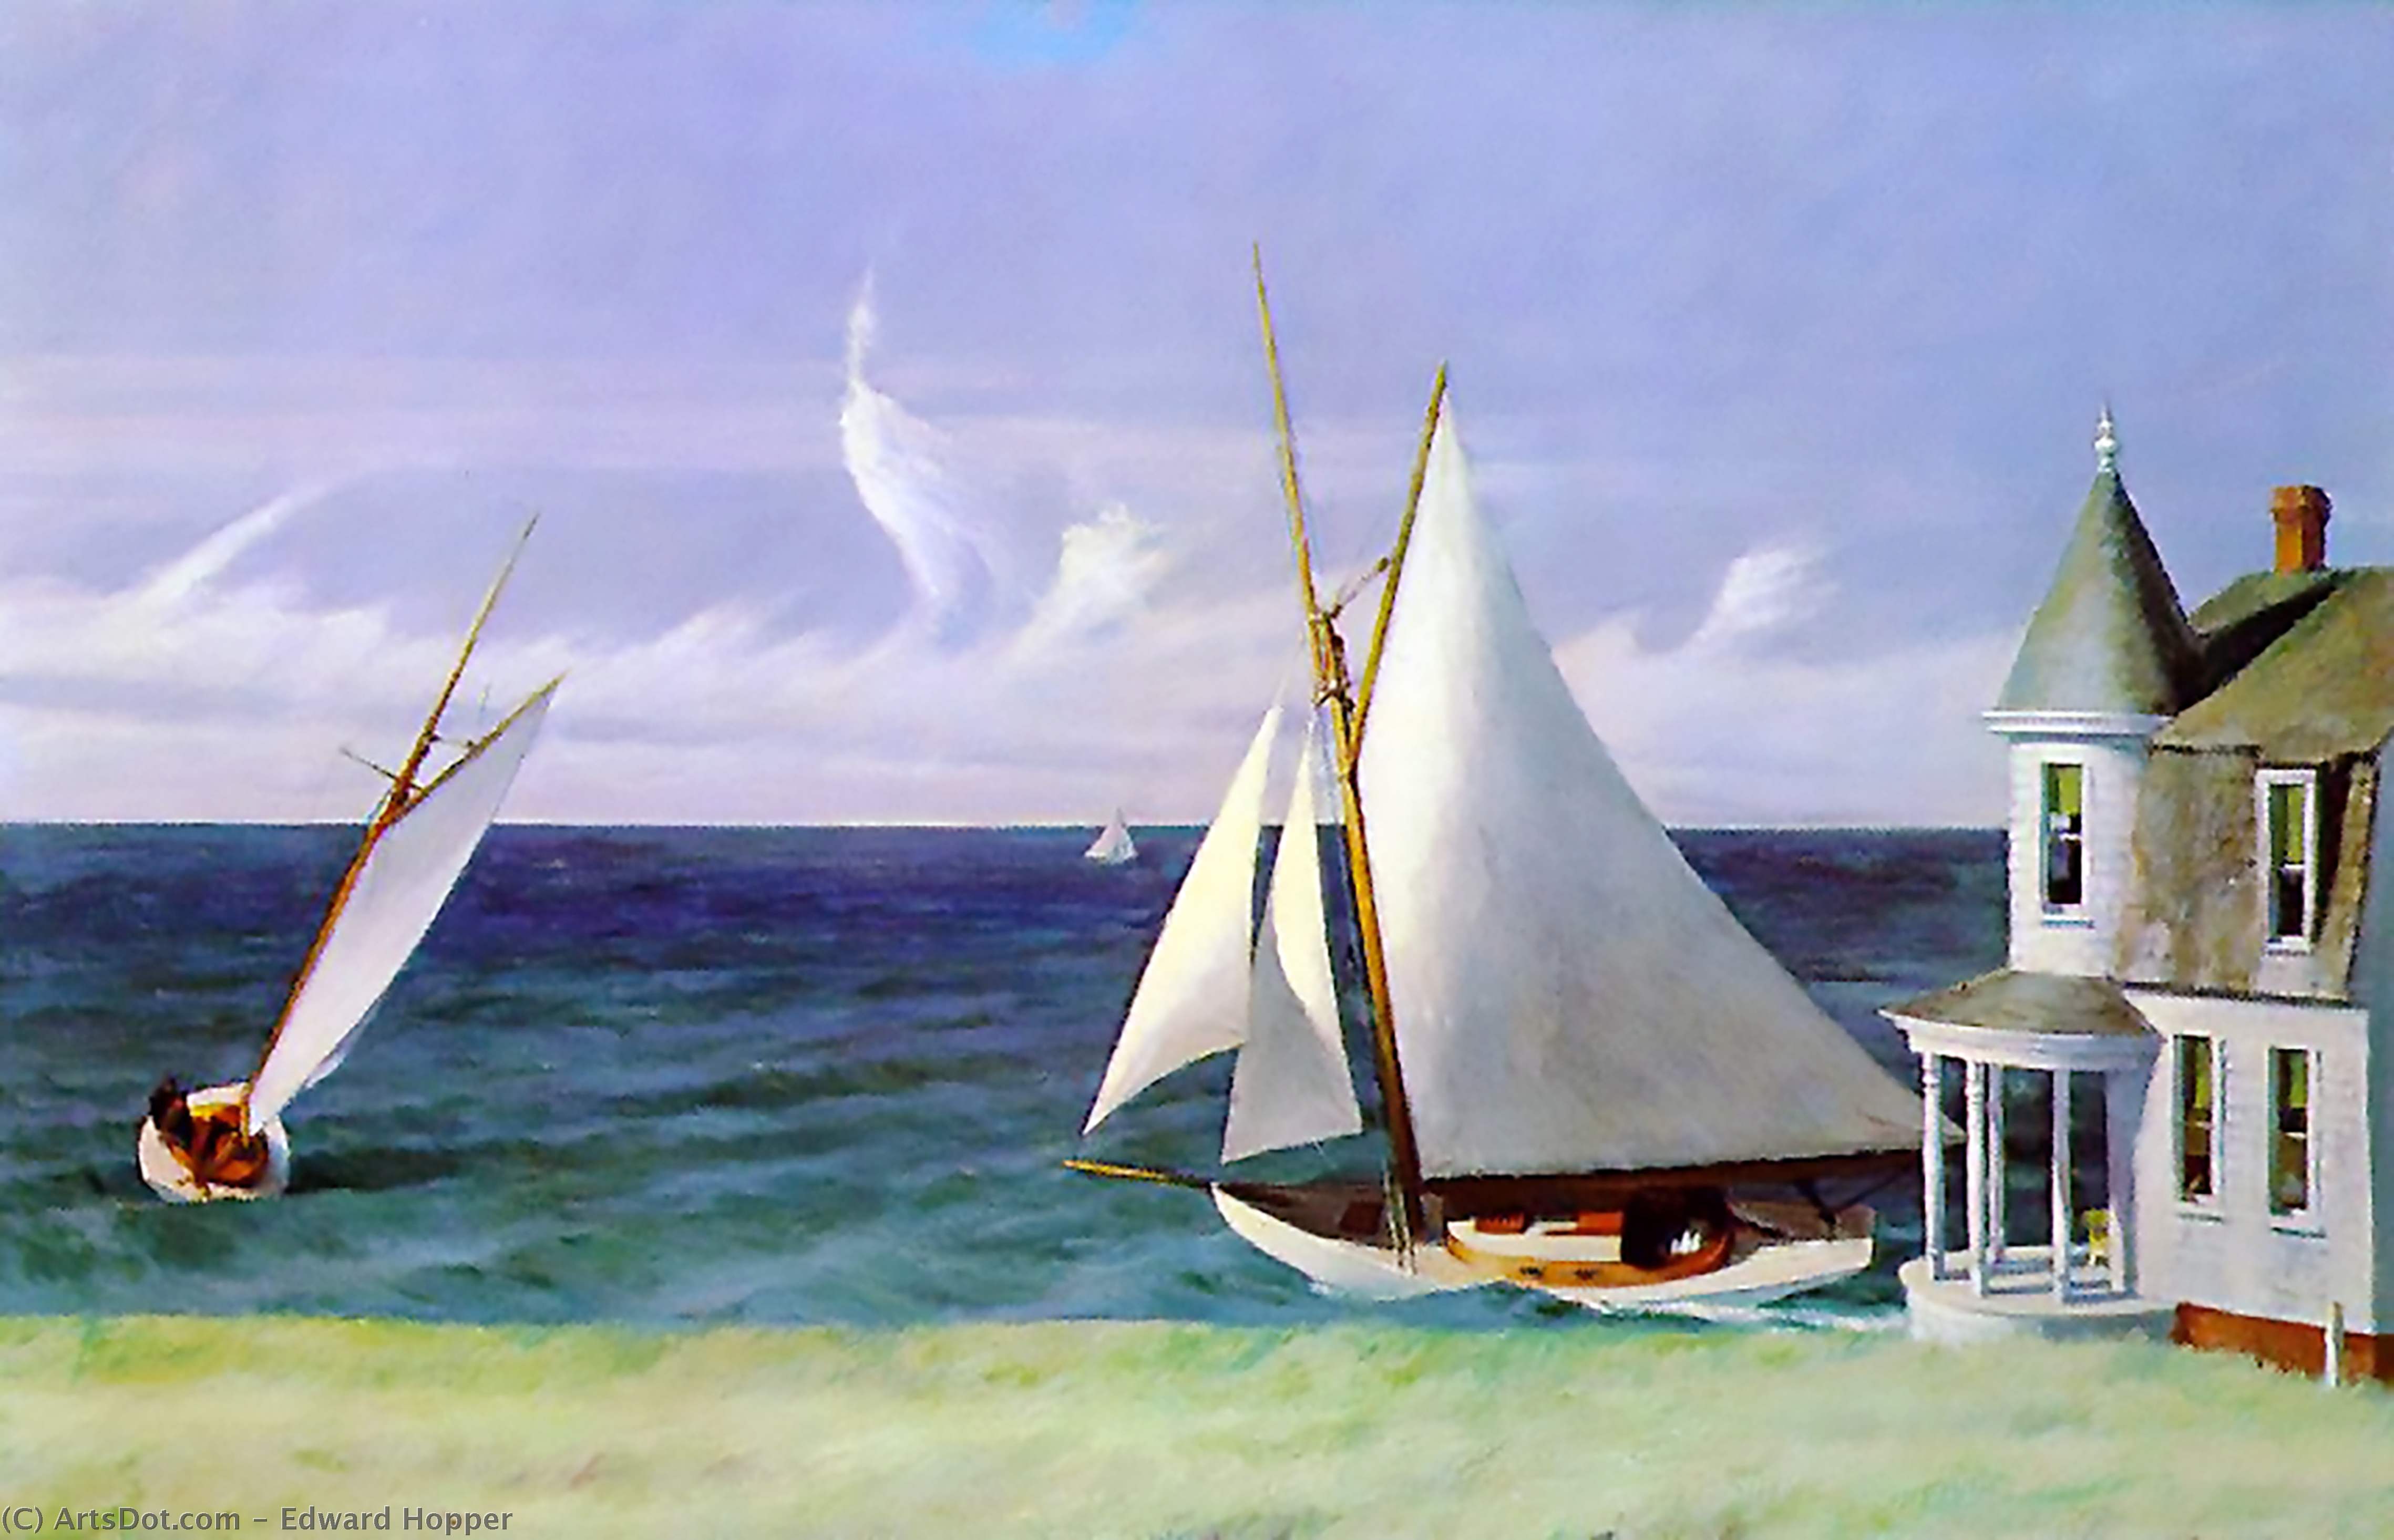 WikiOO.org - Enciclopédia das Belas Artes - Pintura, Arte por Edward Hopper - The lee shore, private